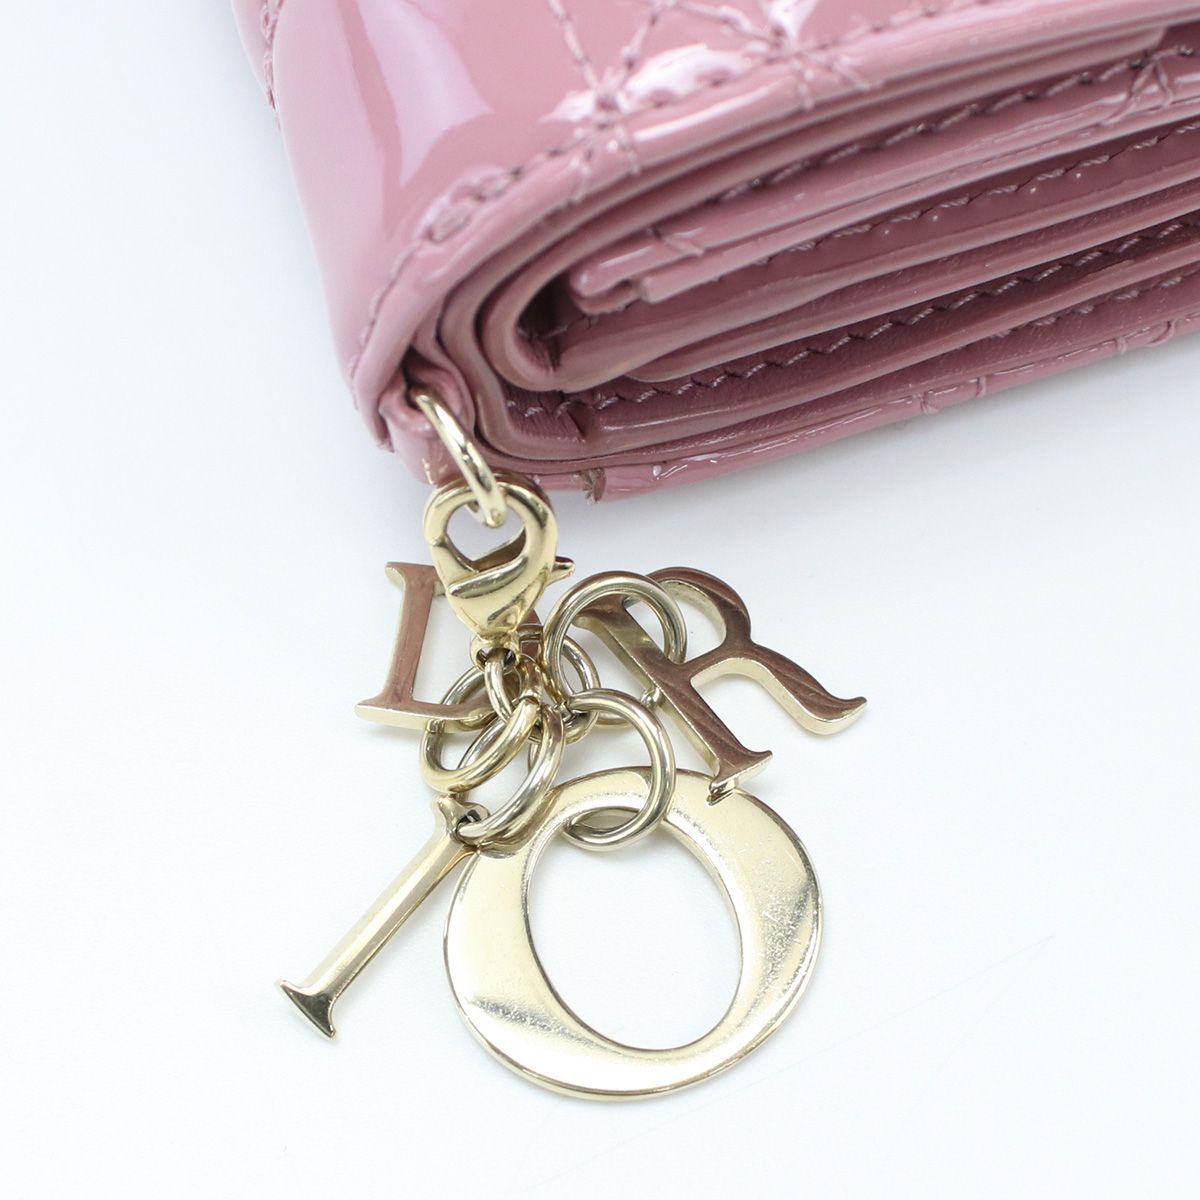 美品保護袋付き】Christian Dior レディディオール三つ折り財布